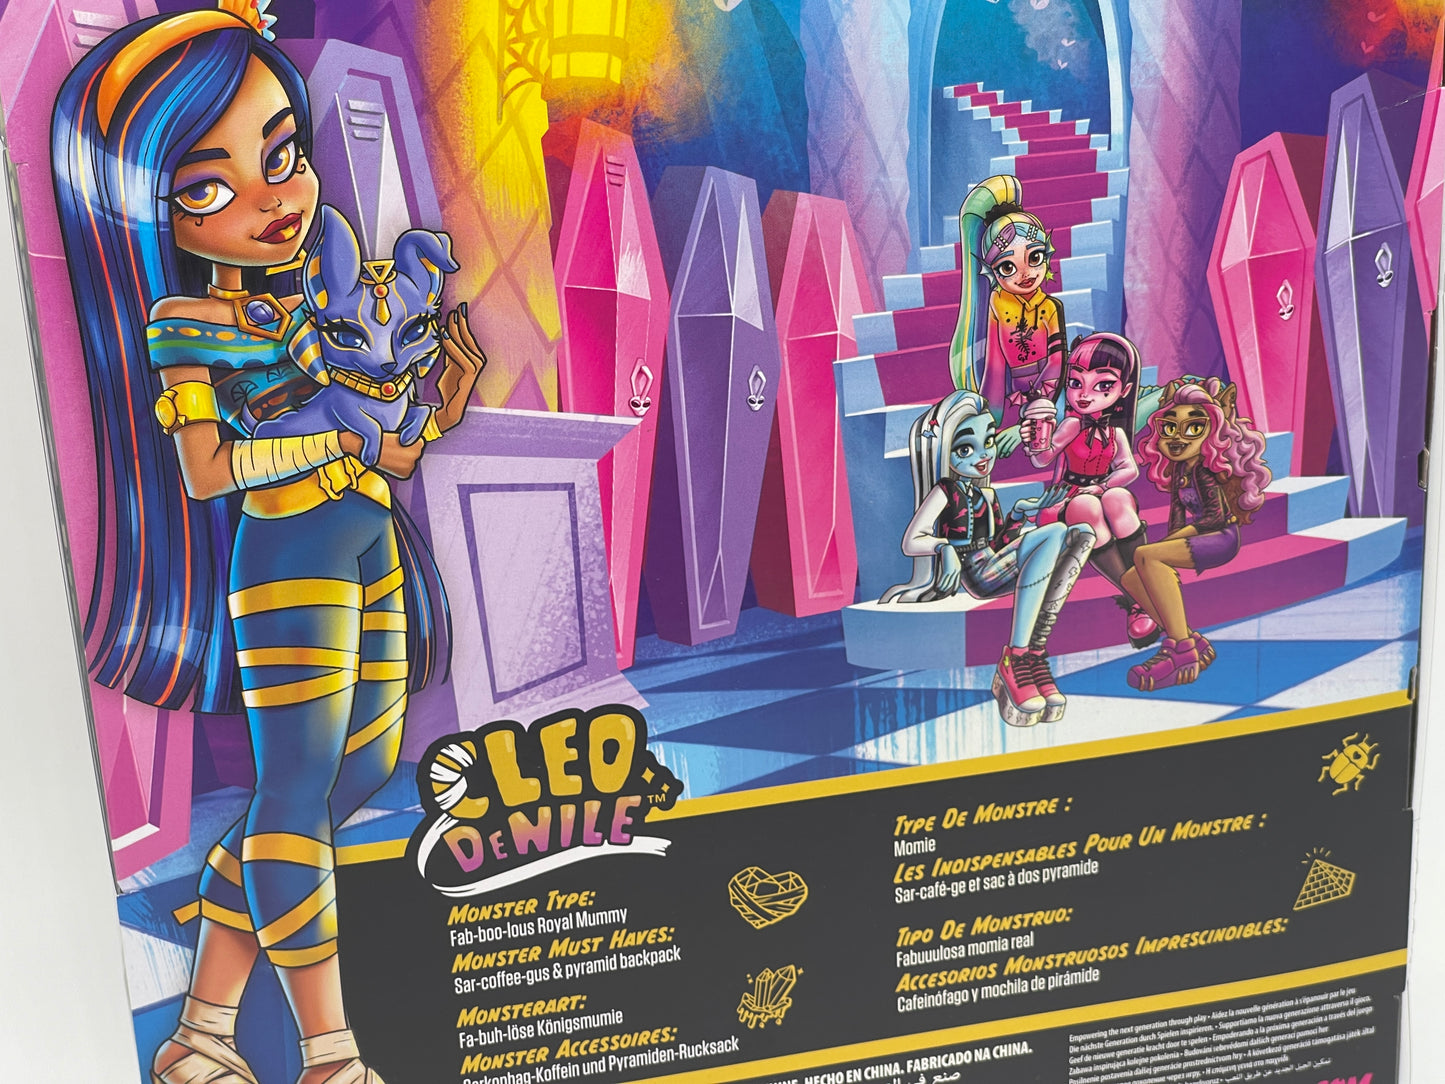 Monster High "Cleo de Nile mit Tut" Reboot, Mattel (2022)